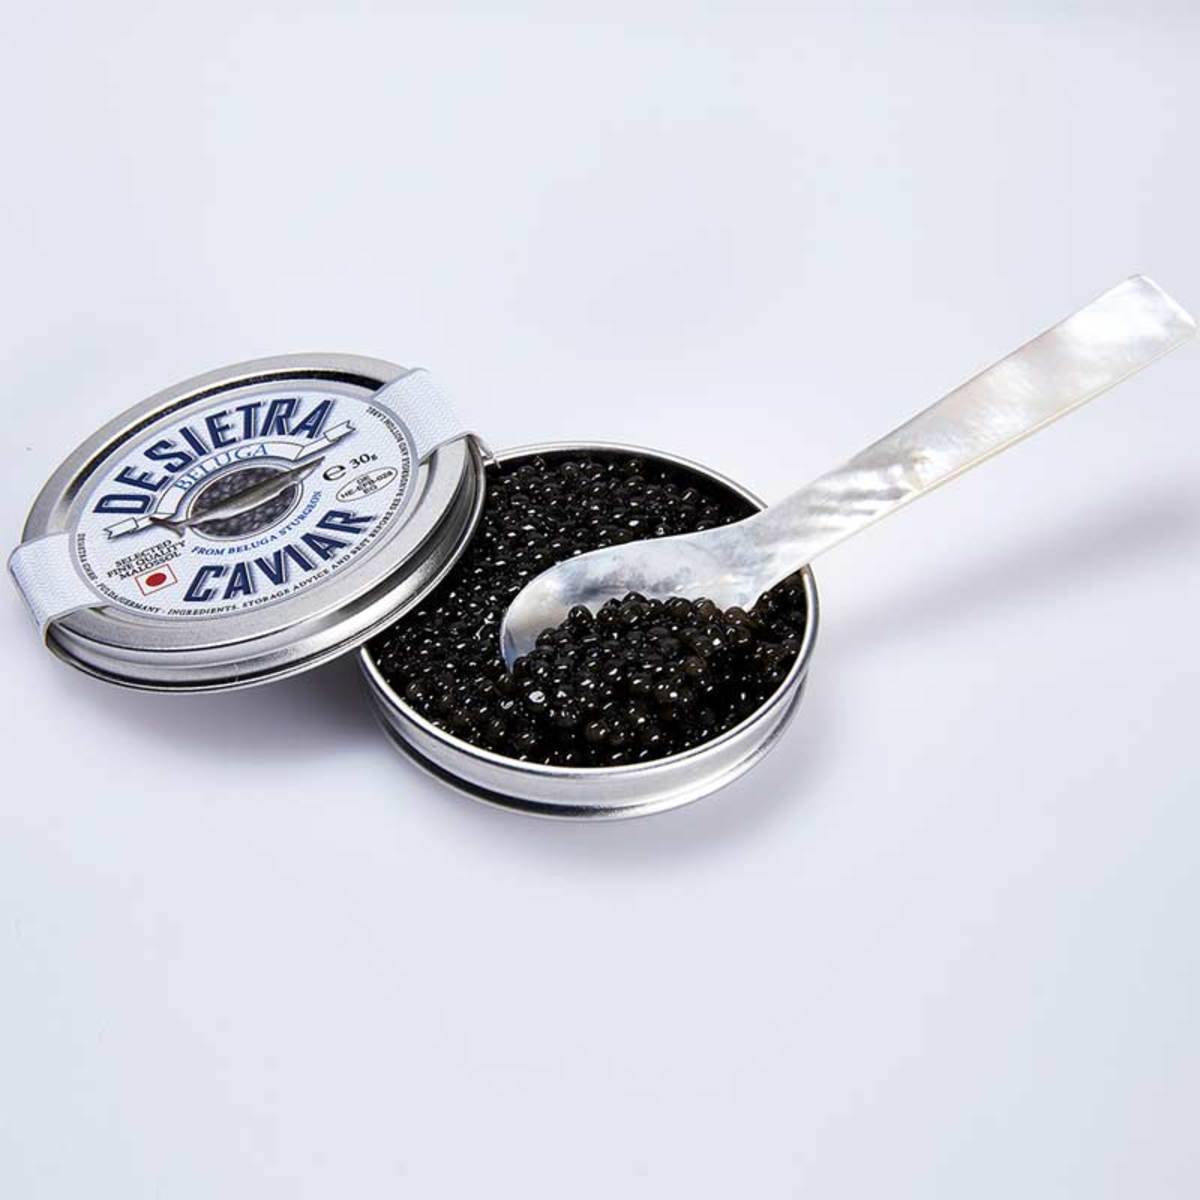 Desietra Beluga Caviar from Beluga Sturgeon, 30g